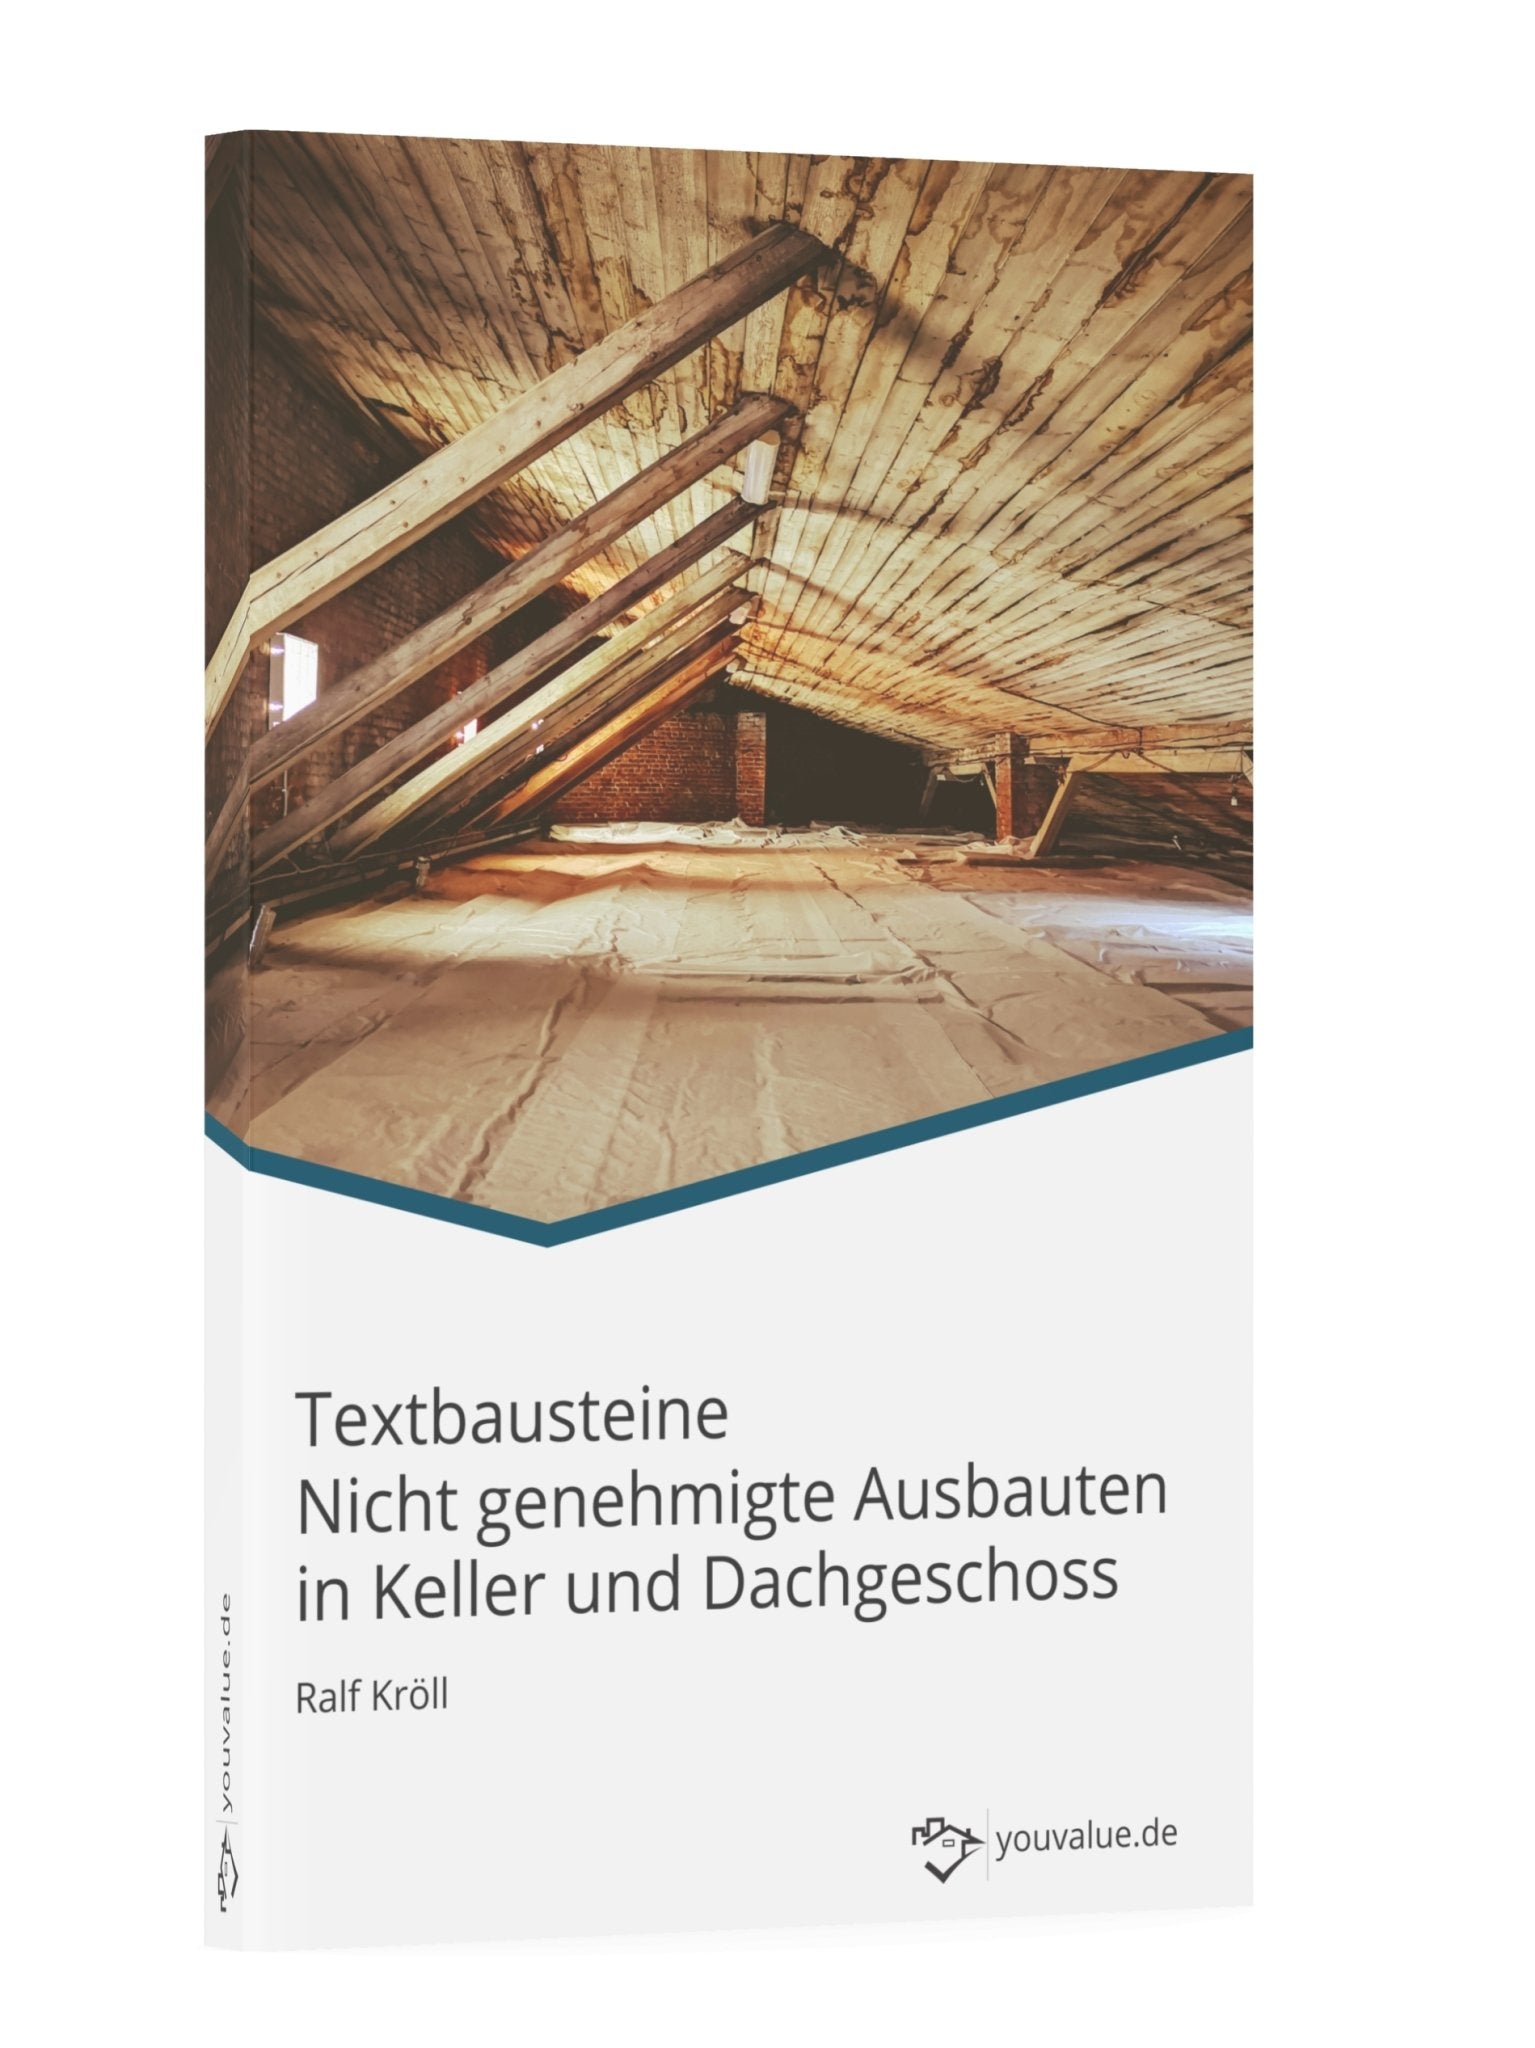 Textbausteine Nicht genehmigte Ausbauten in Keller und Dachgeschoss - Youvalue